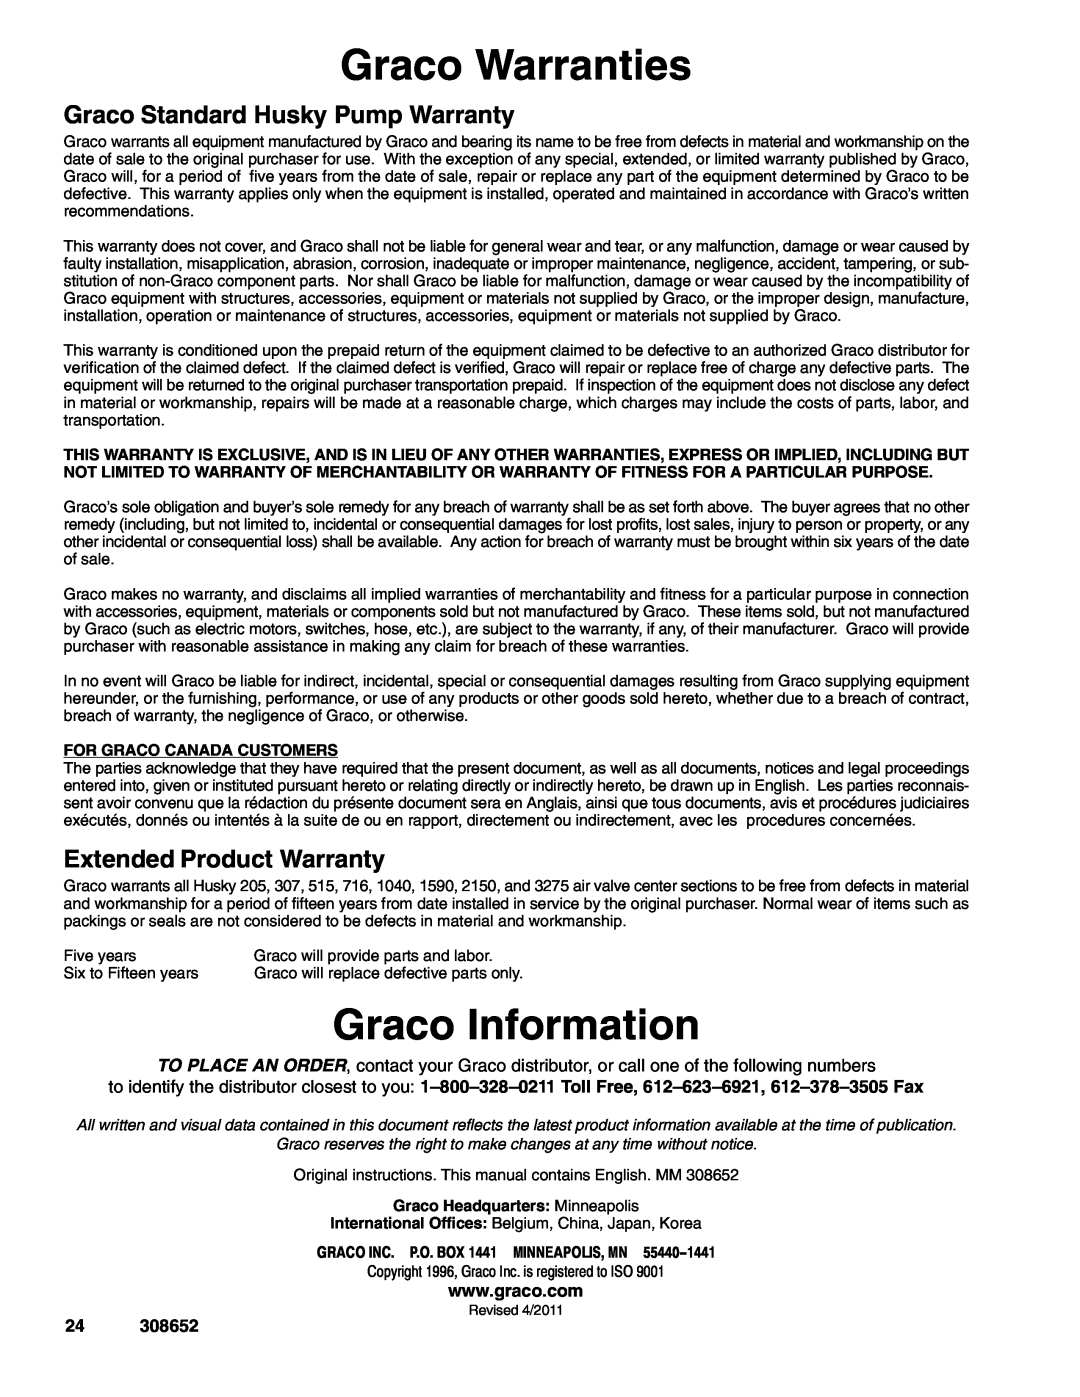 Graco 308652Y Graco Warranties, Graco Information, Graco Standard Husky Pump Warranty, Extended Product Warranty 